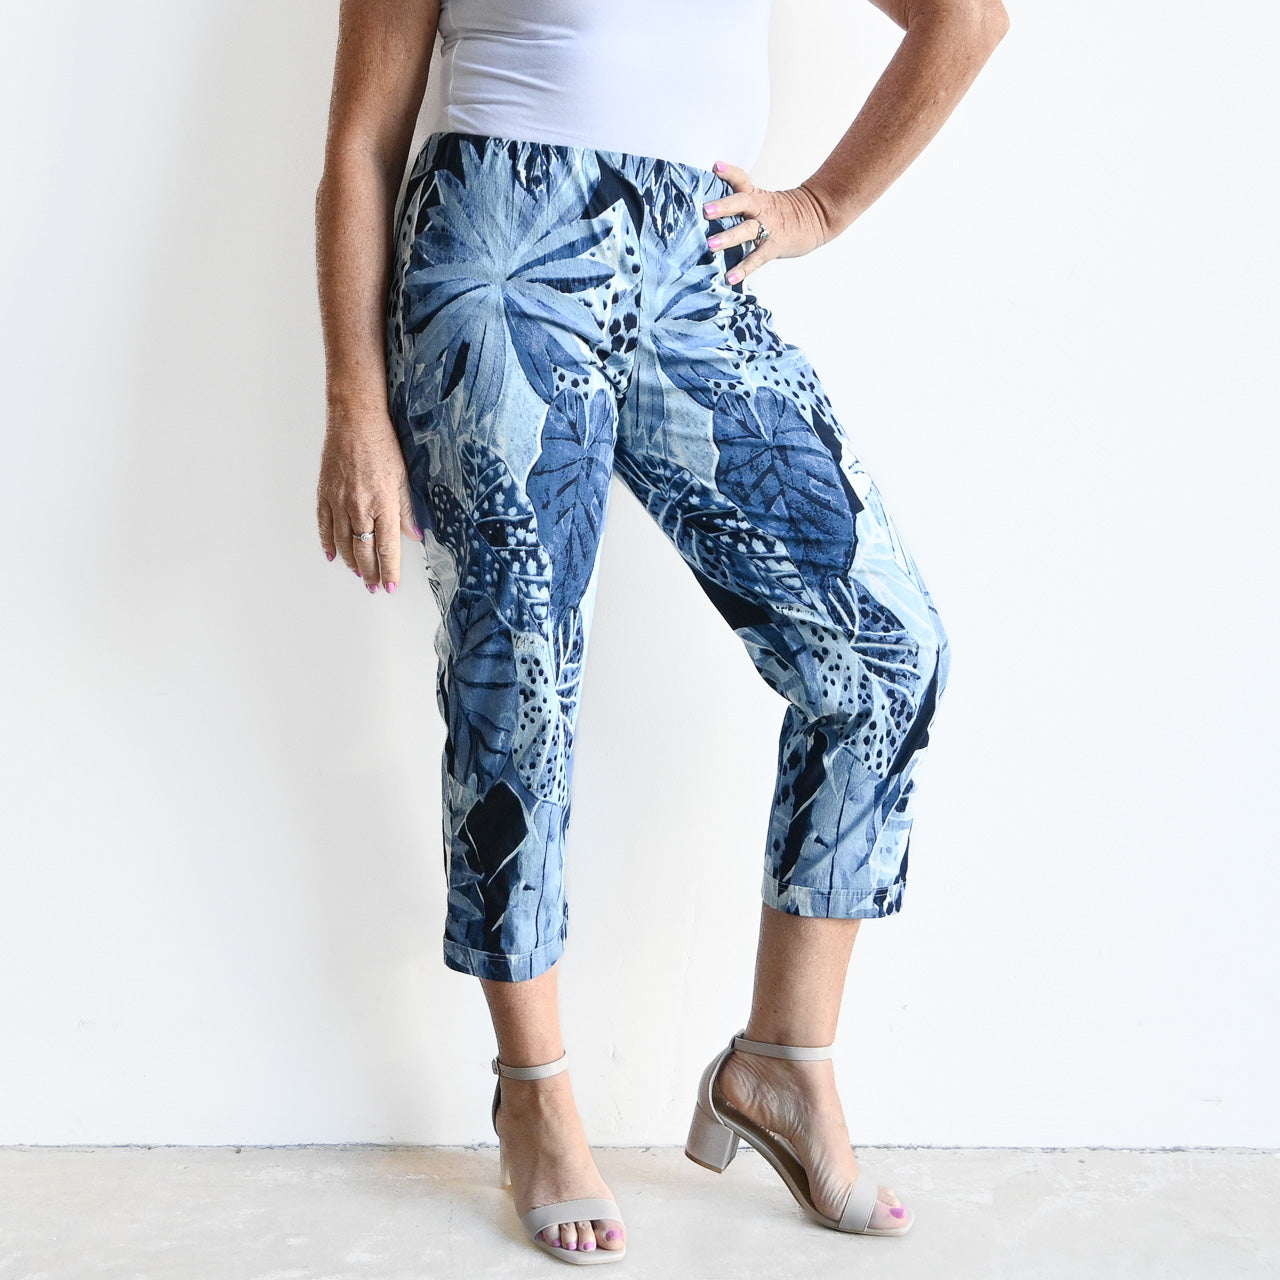 ESPRIT - Capri trousers at our Online Shop